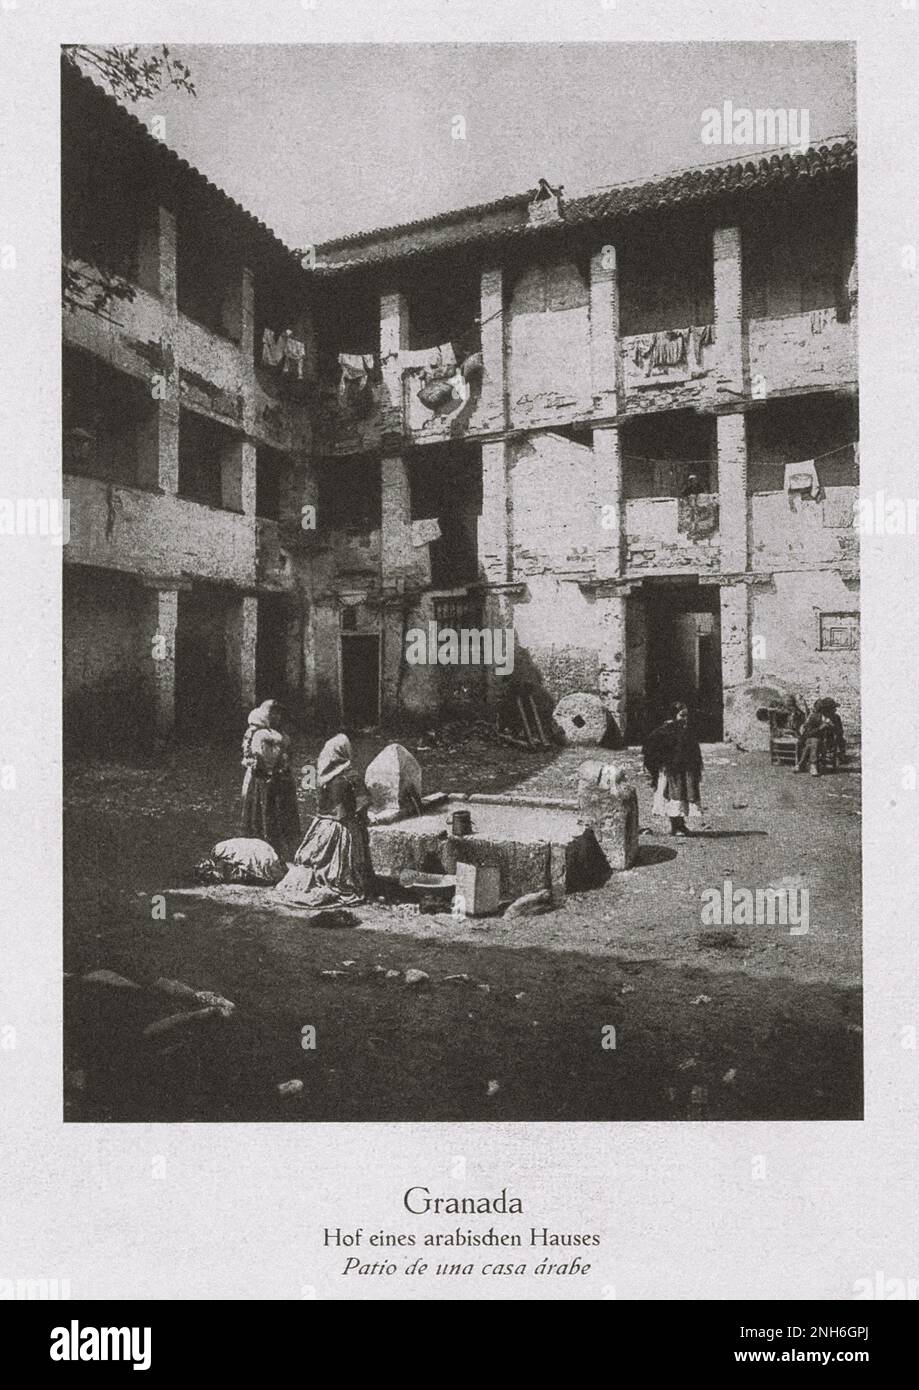 Architektur des alten Spaniens. Vintage-Foto vom Innenhof eines arabischen Hauses in Granada Stockfoto